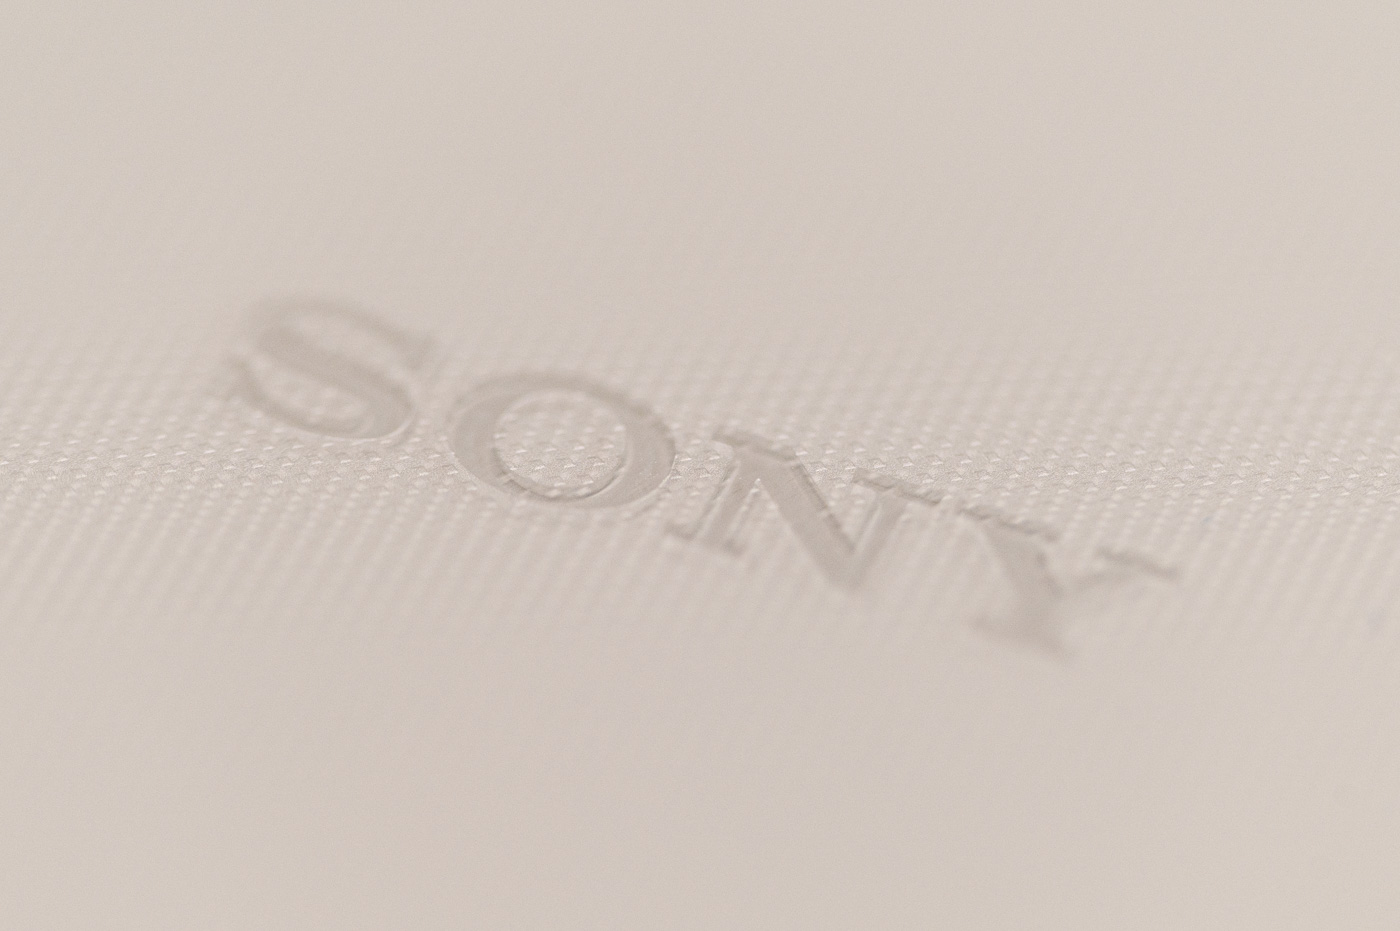 Test Phototrend Sony Xperia 1 V